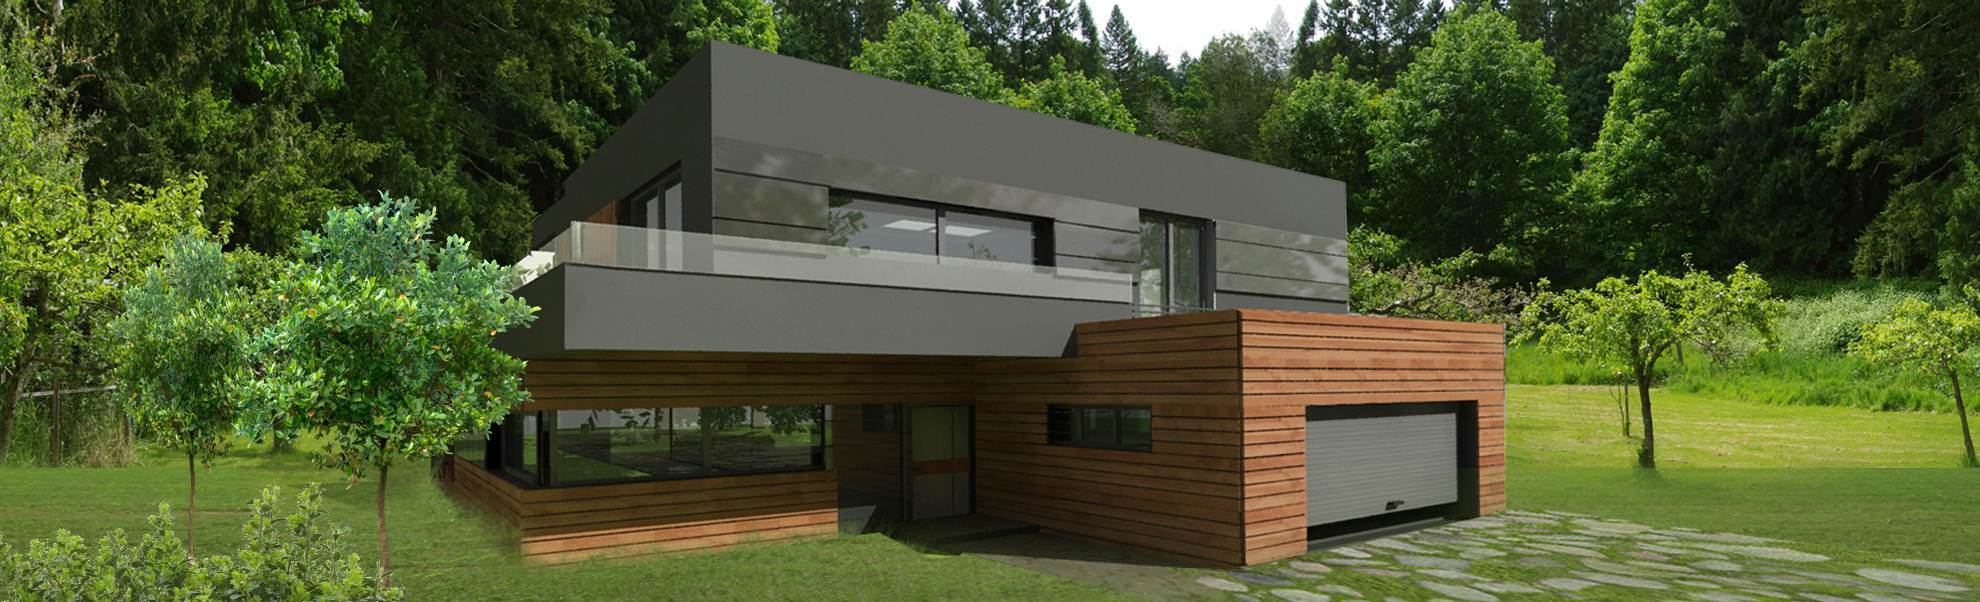 Projekt nowoczesnego domu z płaskim dachem